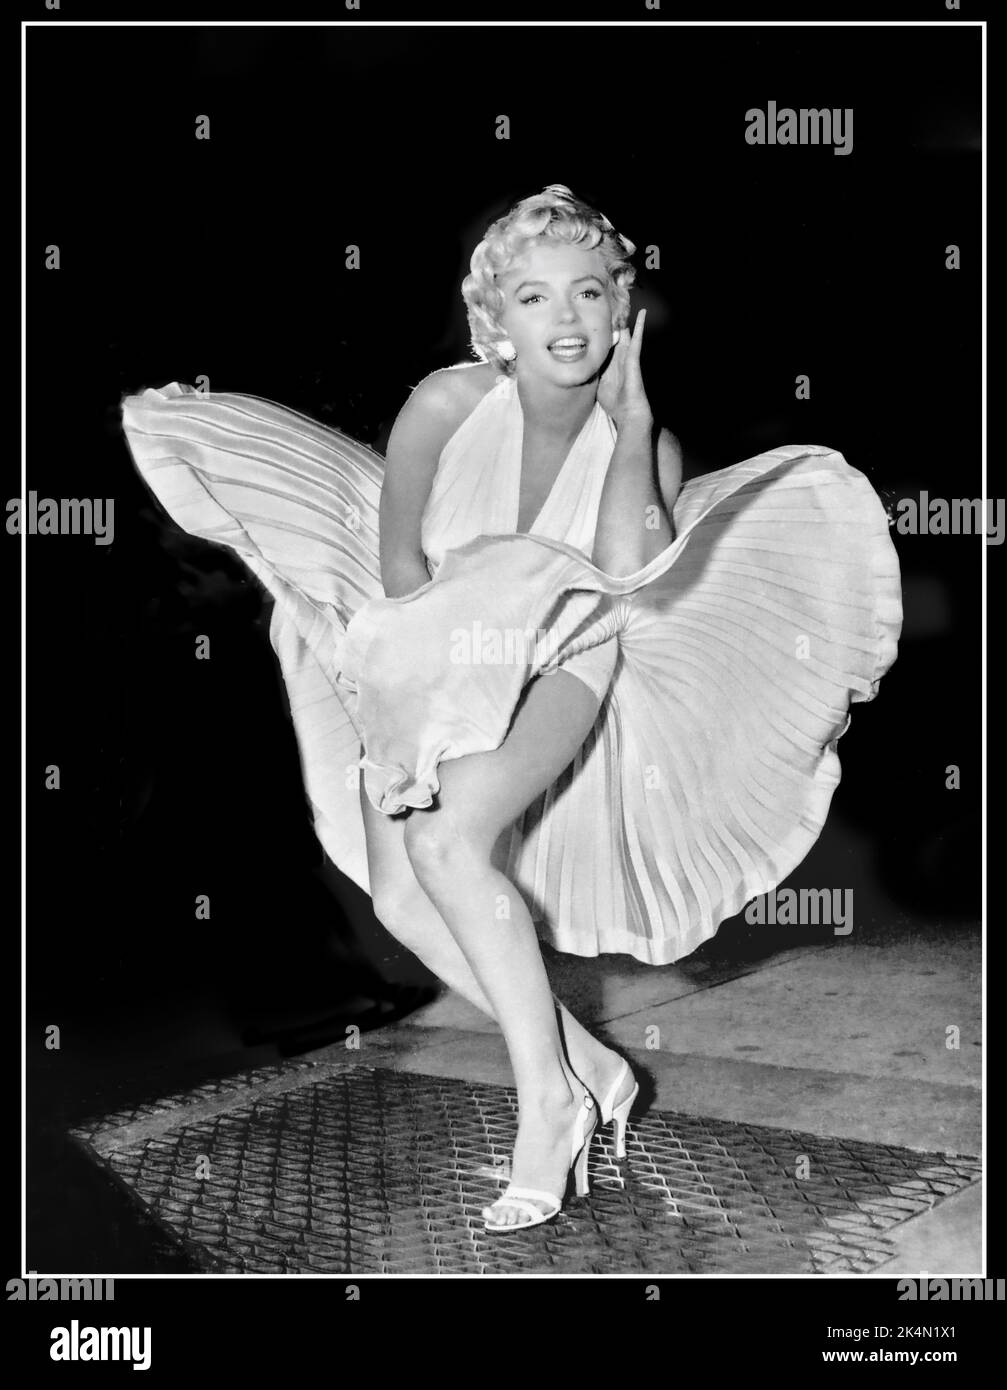 Marilyn Monroe gonna soffiante fino a promuovere Seven Year itch Vintage Film retro immagine 1950s mentre filmare il Seven Year itch sulle strade di New York, a quanto pare si fermò durante le riprese della famosa "scena della camicia" e si pose per i giornalisti e i fotografi che stavano coprendo il film. Il risultato è un'immagine iconica che ha immediatamente promosso il film. Data 9 settembre 1954 Foto Stock